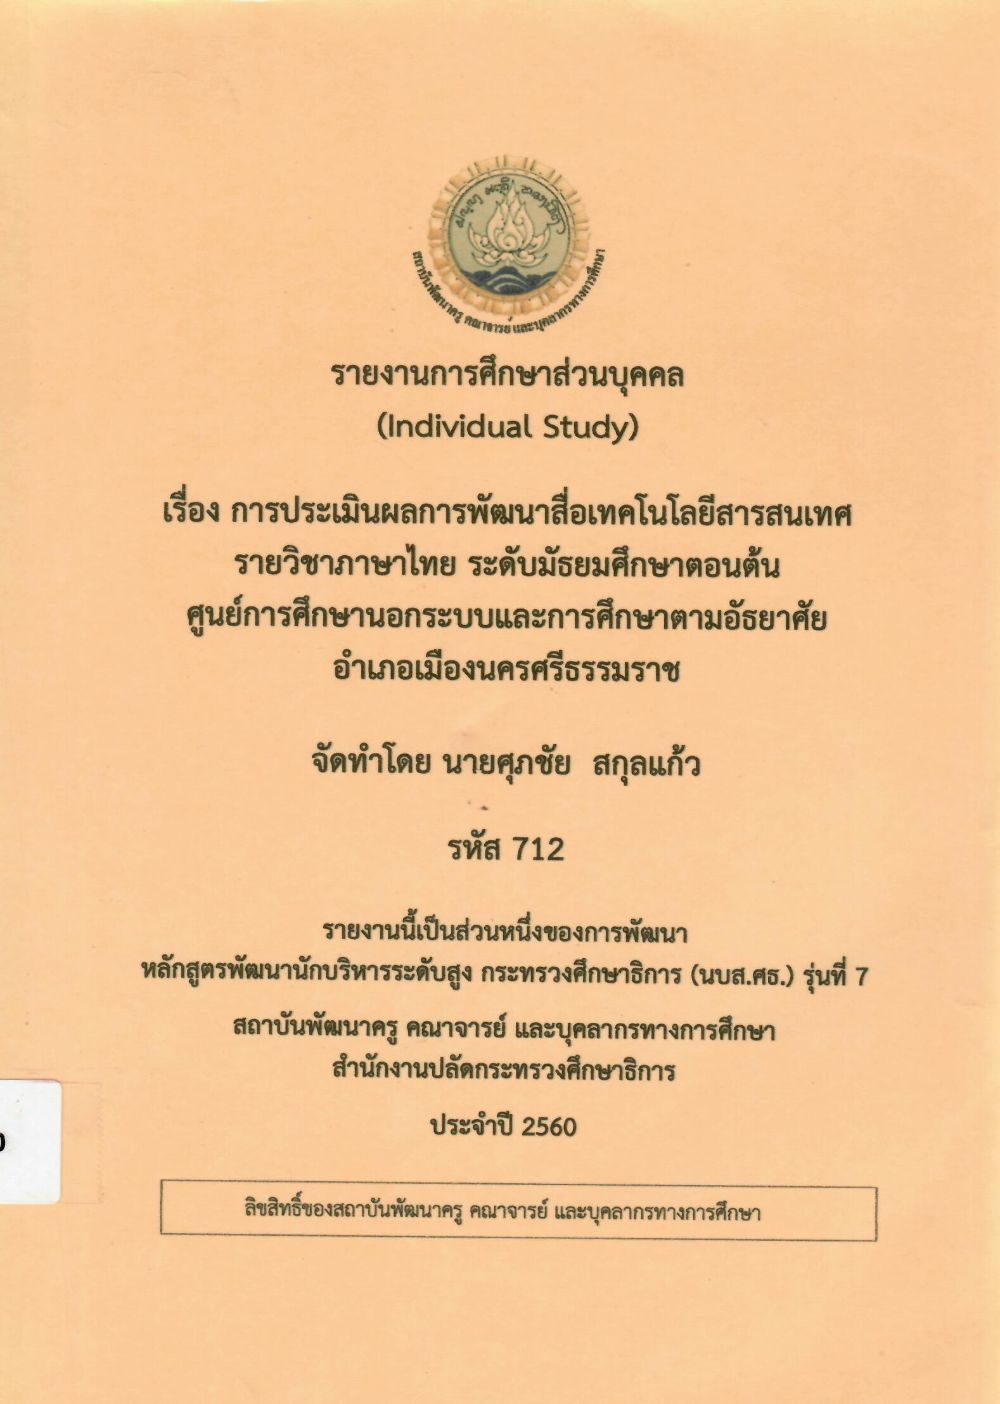 การประเมินผลการพัฒนาสื่อเทคโนโลยีสารสนเทศรายวิชาภาษาไทย ระดับมัธยมศึกษาตอนต้น ศูนย์การศึกษานอกระบบและการศึกษาตามอัธยาศัย อำเภอเมืองนครศรีธรรมราช: รายงานการศึกษาส่วนบุคคล (Individual Study)/ ศุภชัย สกุลแก้ว